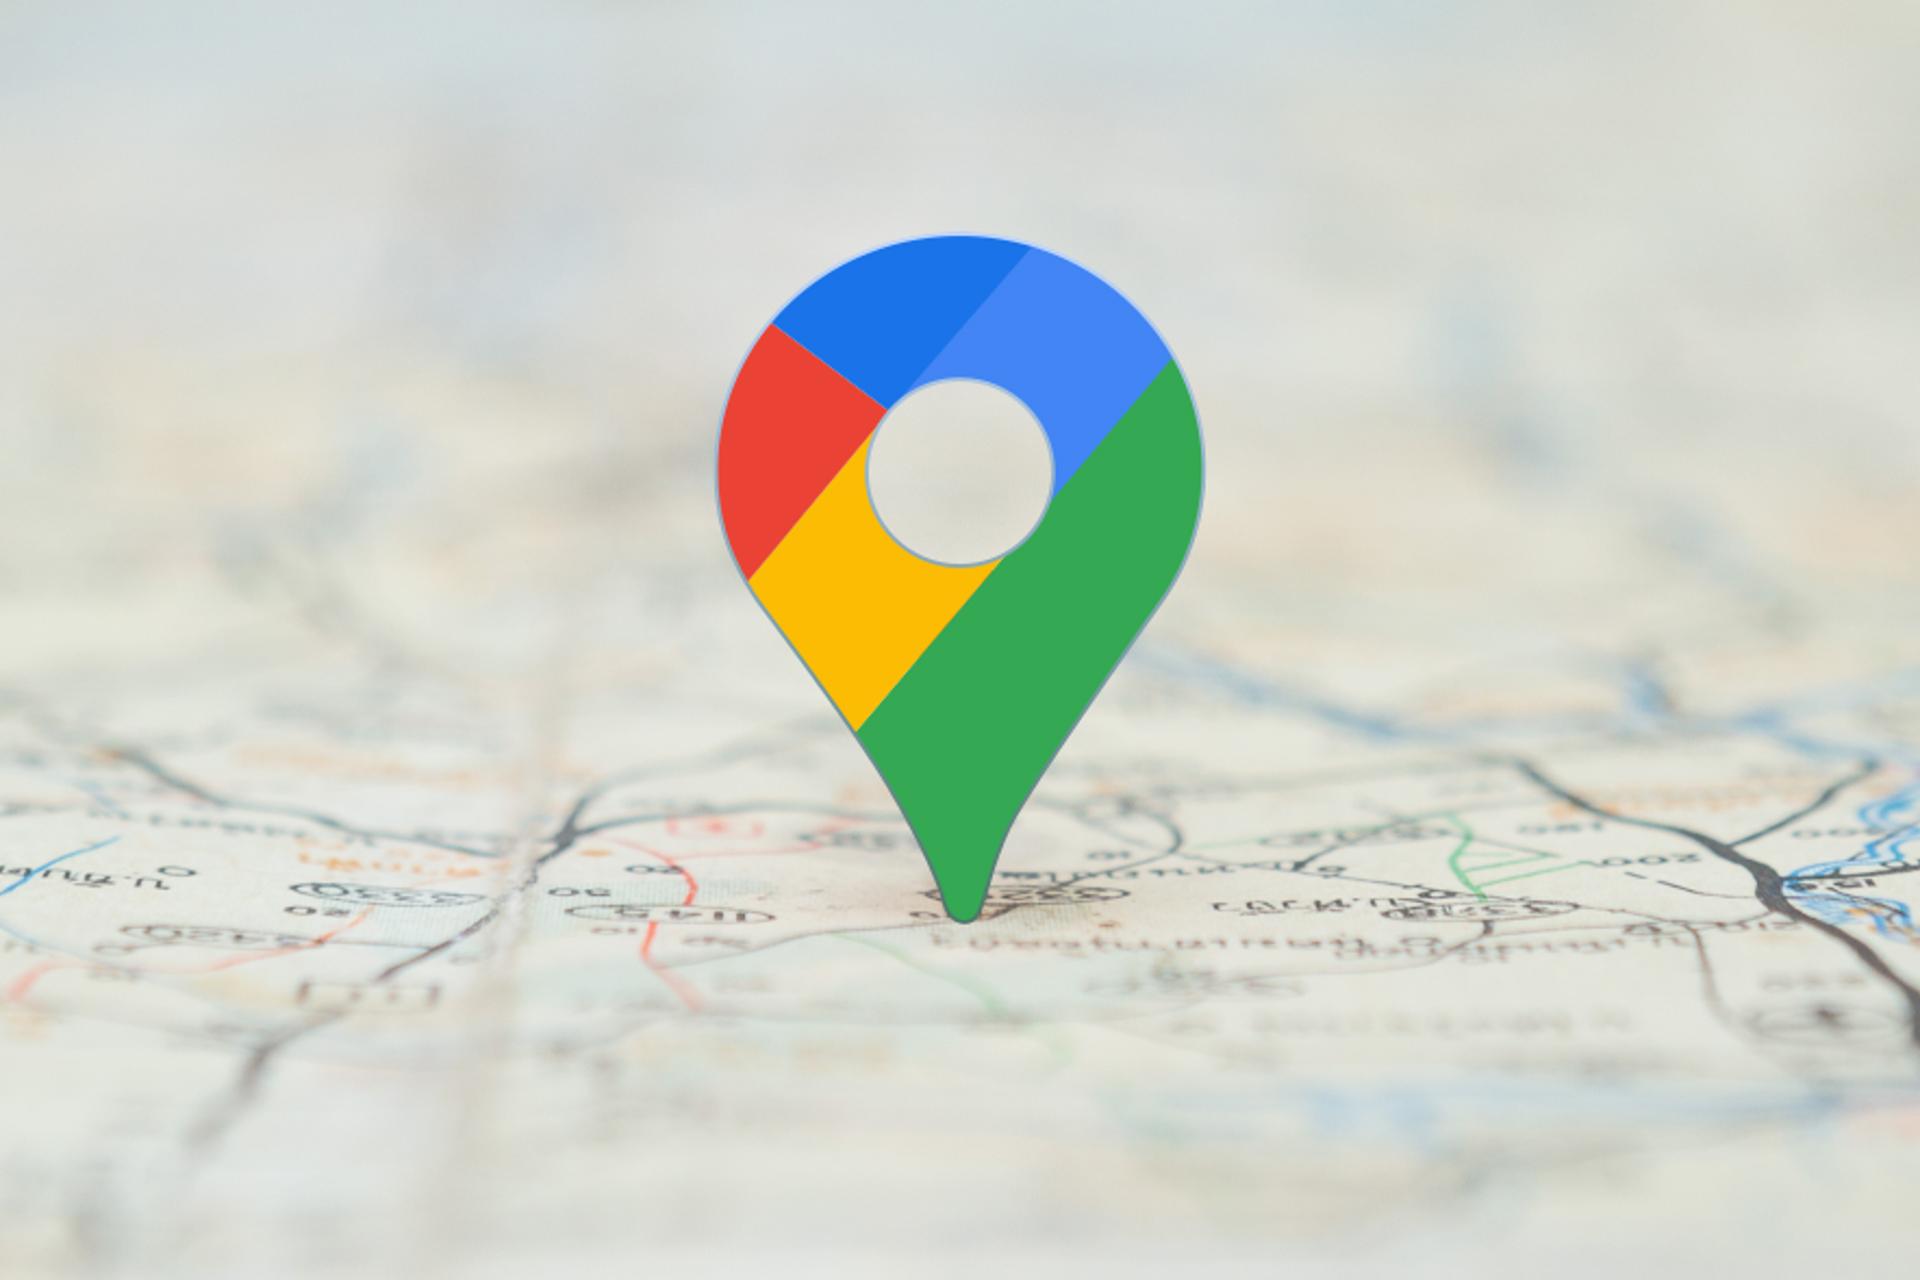 لوگو گوگل مپ مپس Google Maps سه بعدی روی نقشه